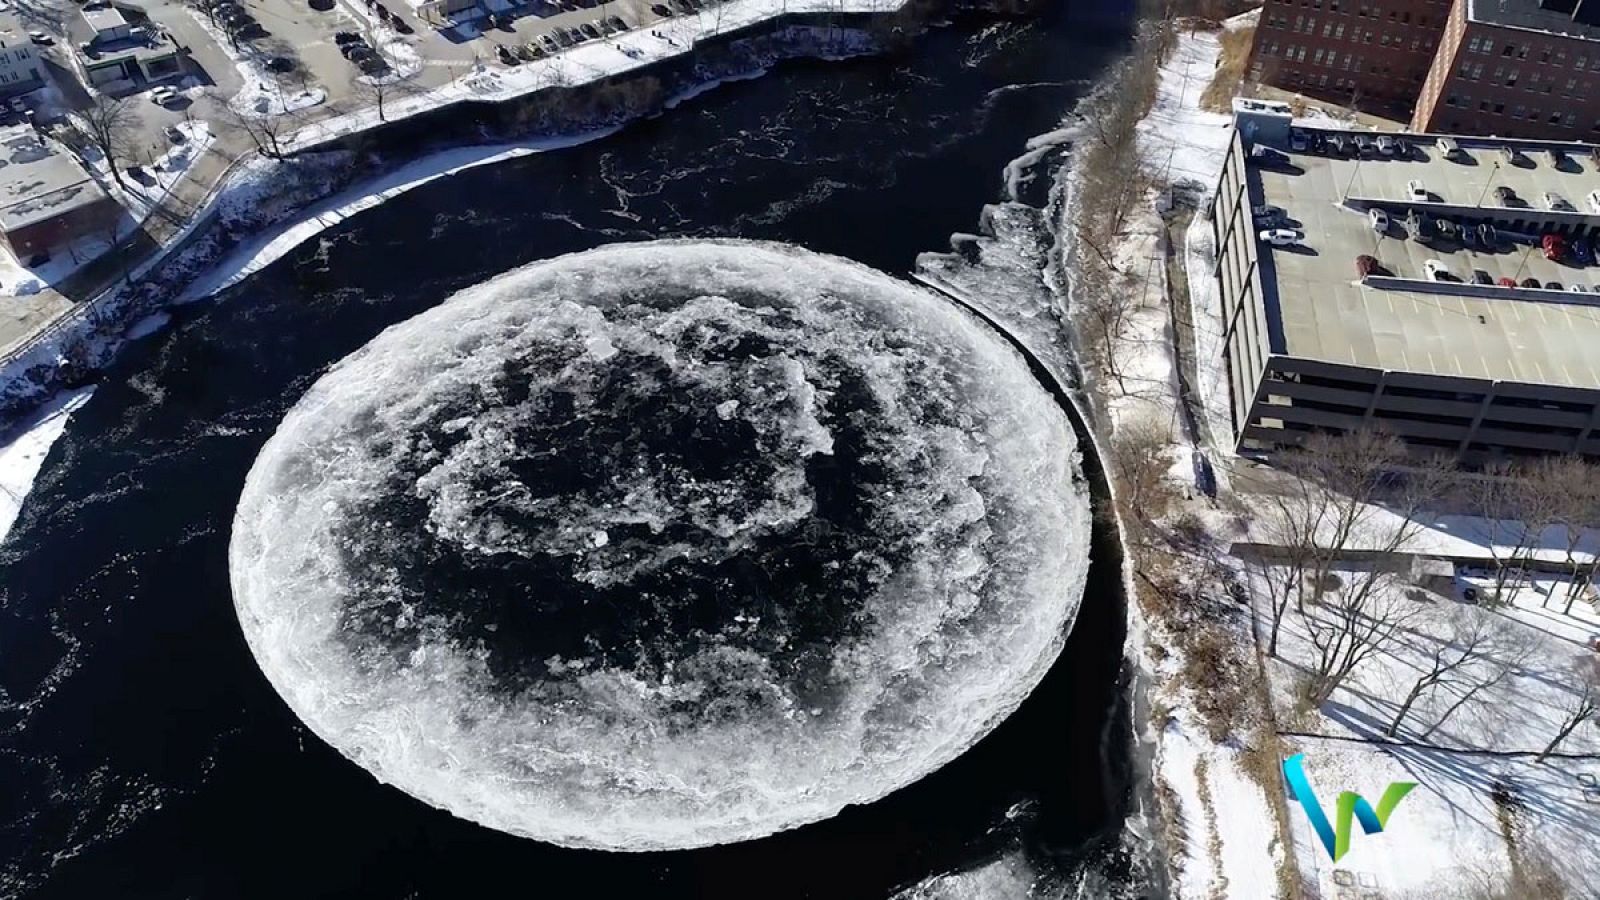 Imagen aérea del disco de hielo surgido en el río Presumpscot.